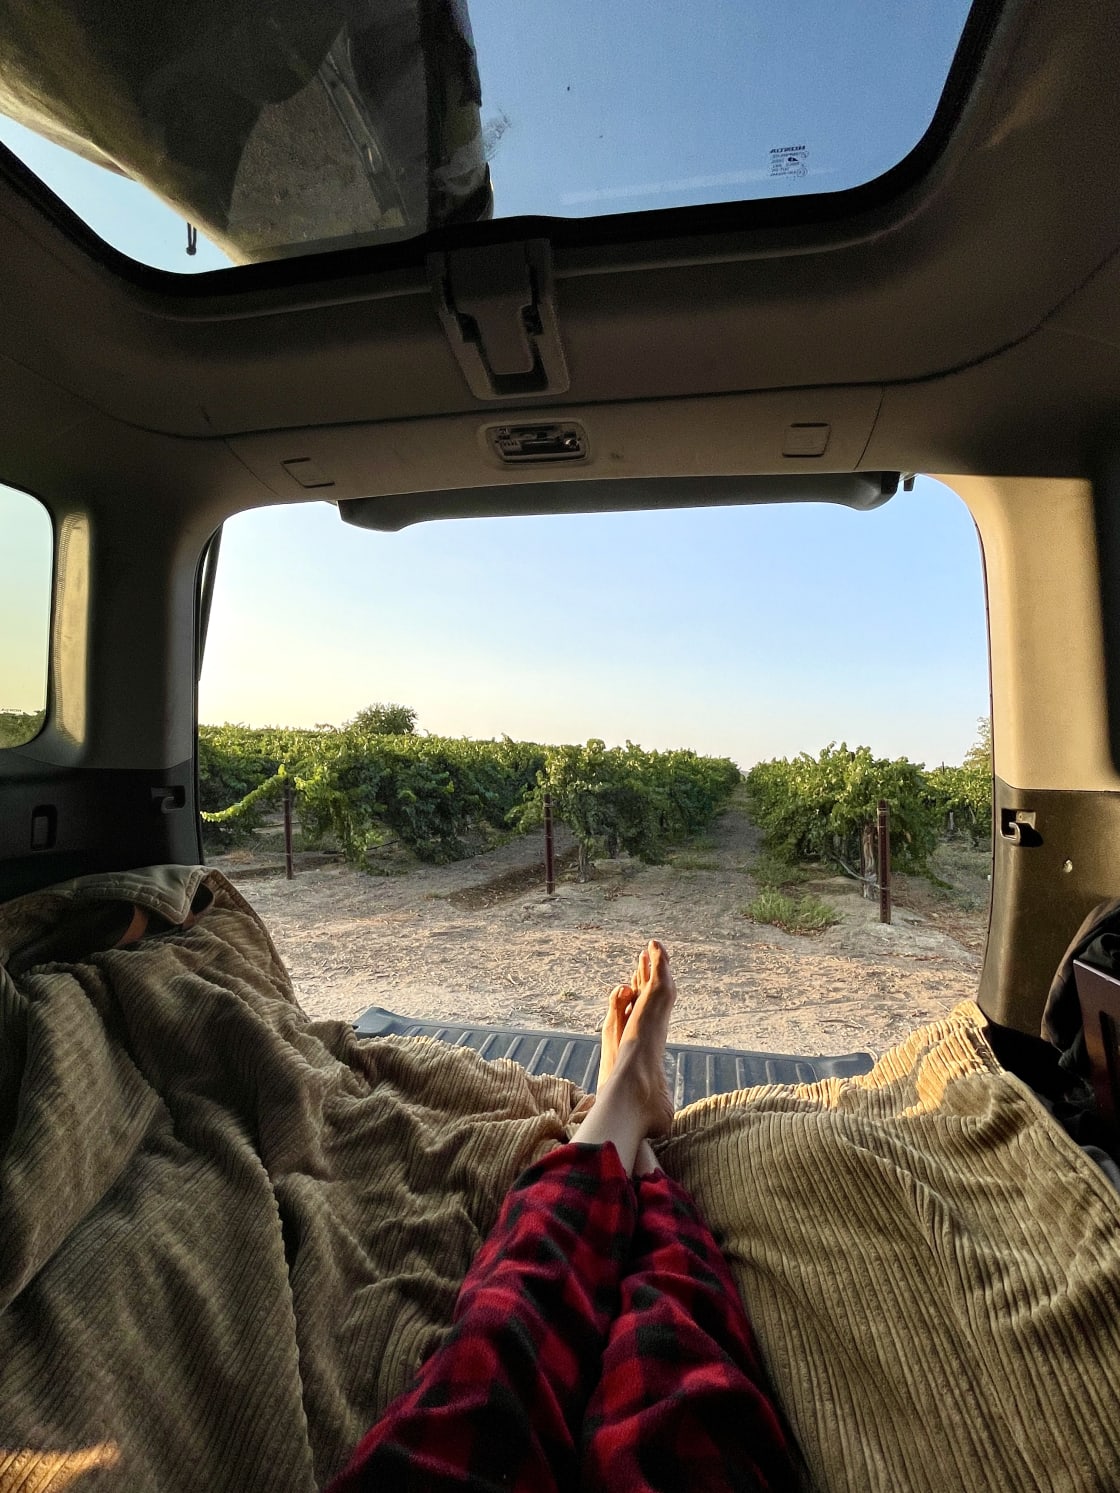 Campsite in the Vineyard